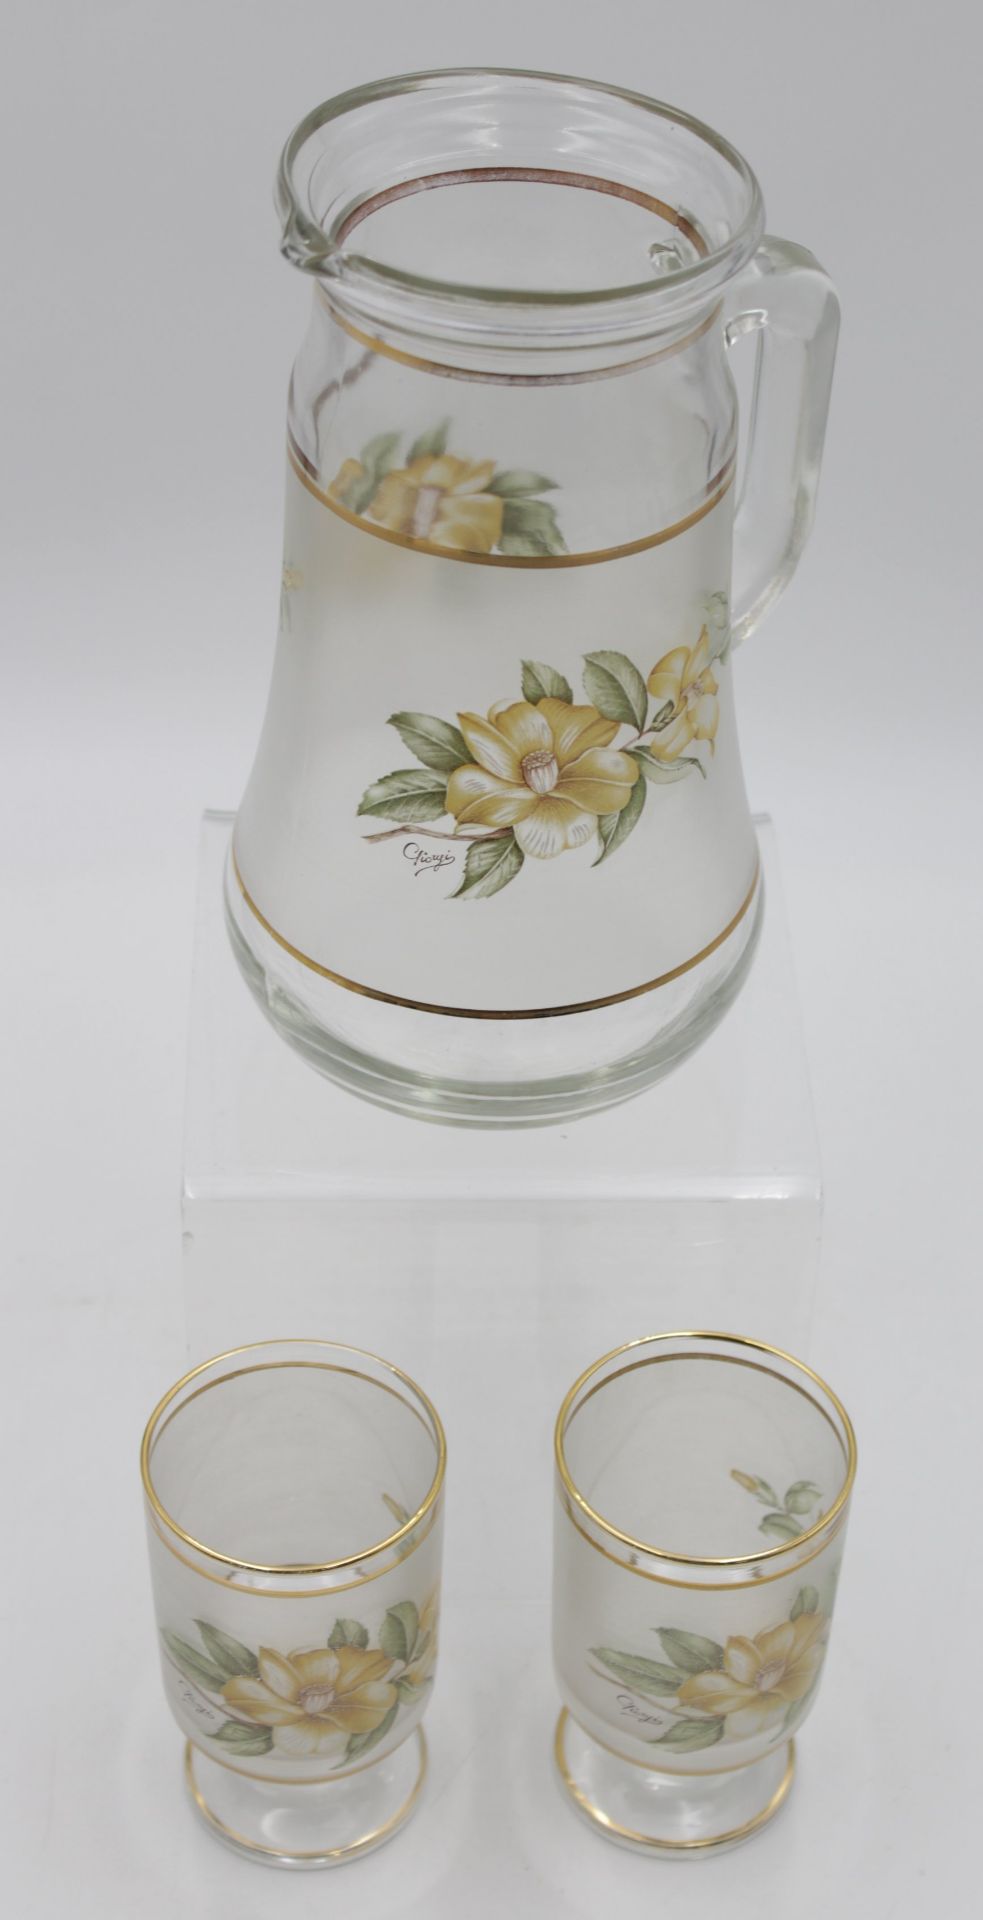 Wasserkrug mit 2 Gläsern, florales Dekor, signiert, Krug H-22cm Gläser H-12,2cm. - Image 4 of 4